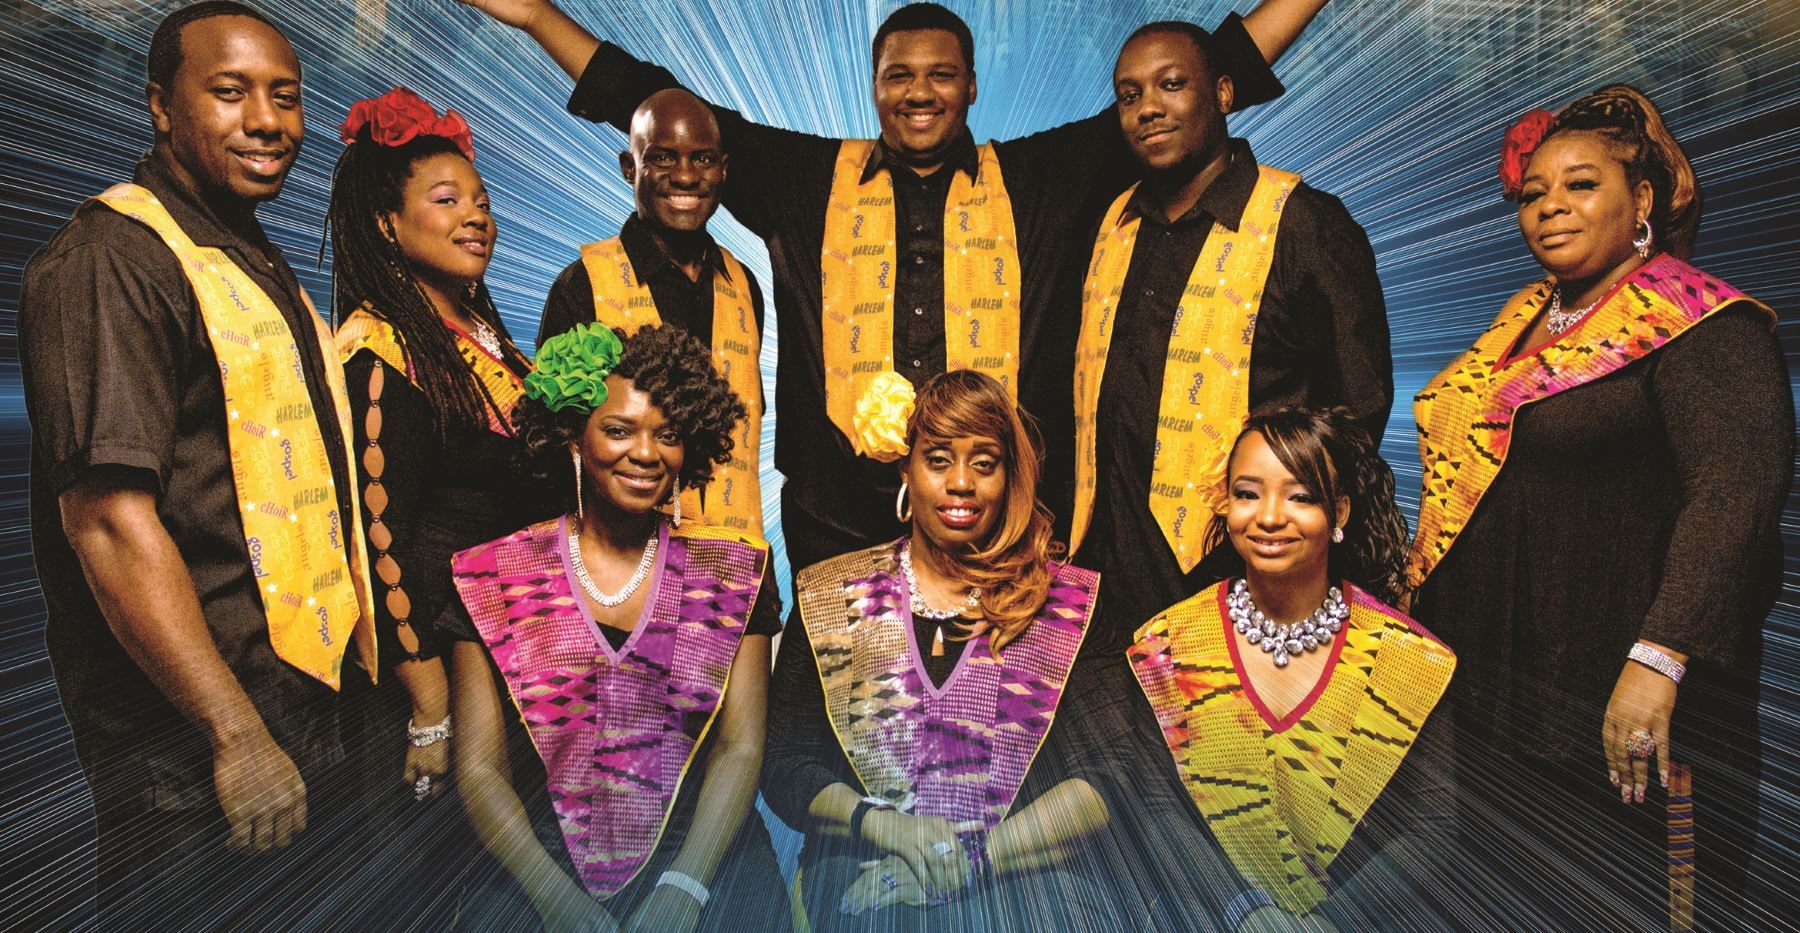 Harlem Gospel Choir Photo Web